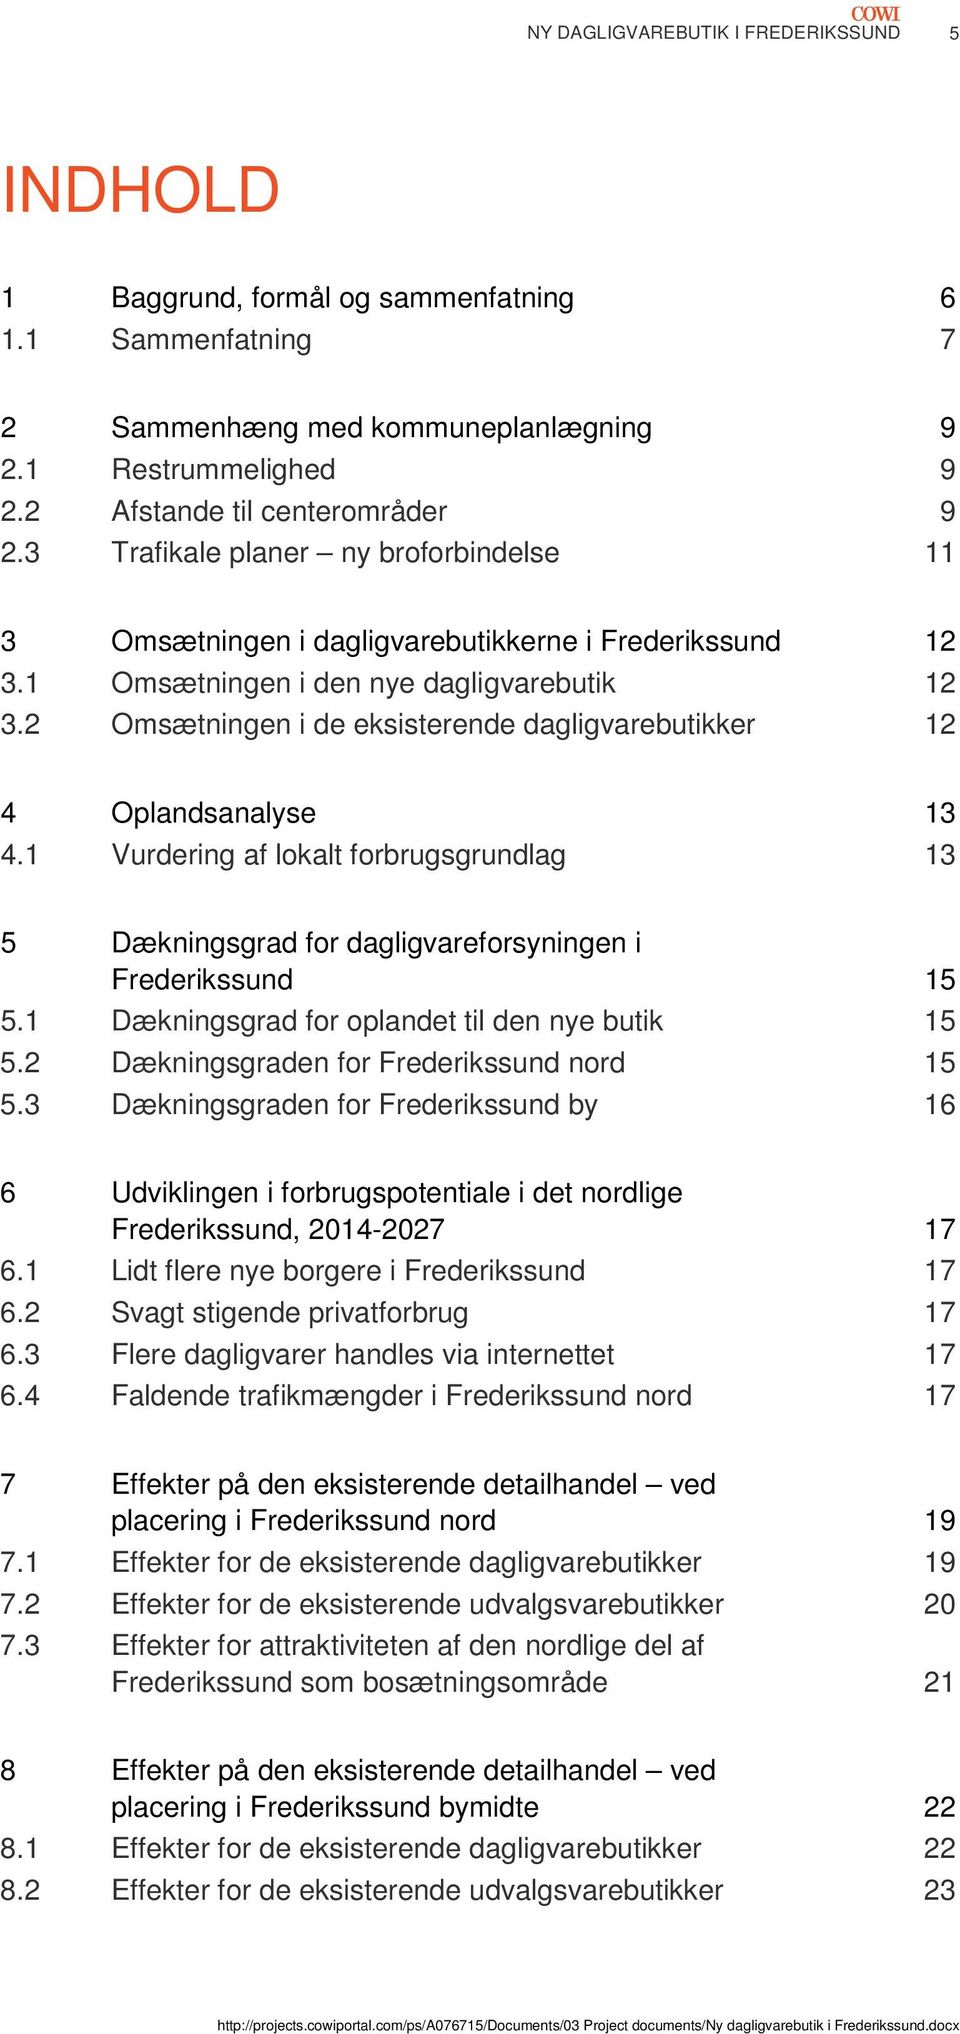 2 Omsætningen i de eksisterende dagligvarebutikker 12 4 Oplandsanalyse 13 4.1 Vurdering af lokalt forbrugsgrundlag 13 5 Dækningsgrad for dagligvareforsyningen i Frederikssund 15 5.